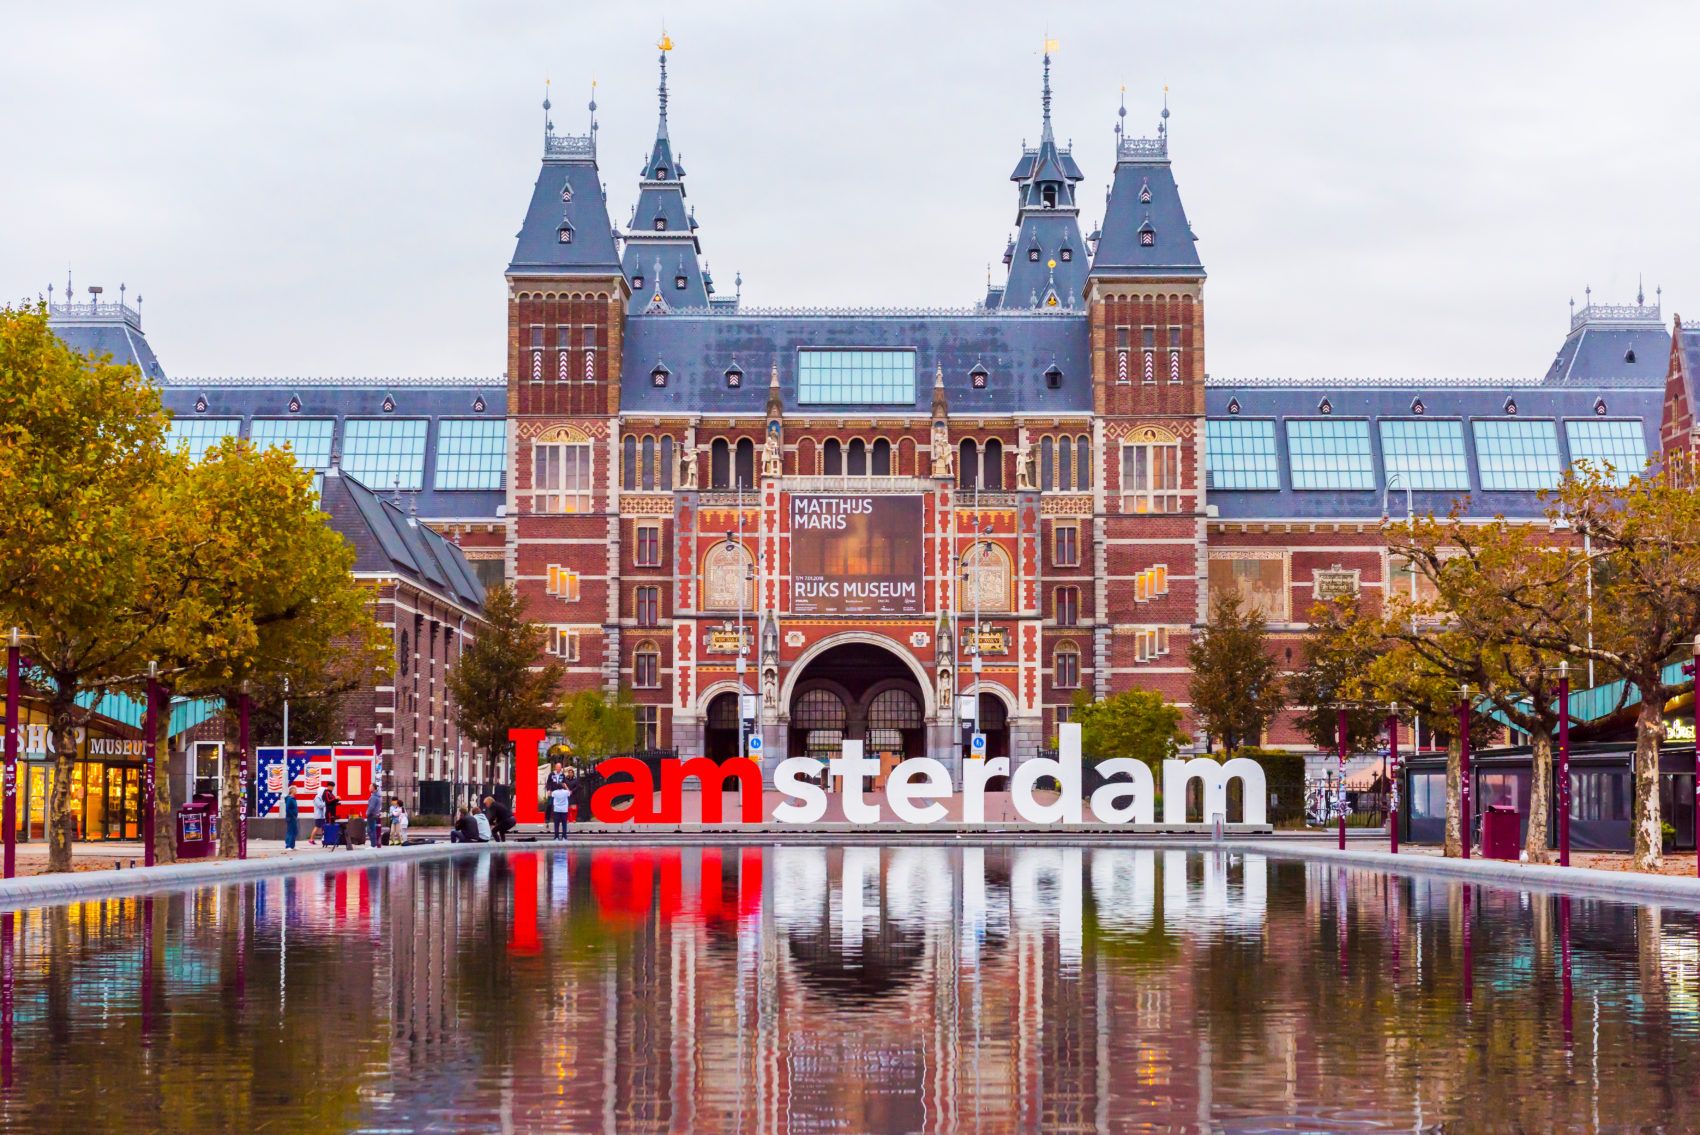 University of Amsterdam – №10 в Европе по специальностям в области IT и Computer Sciences